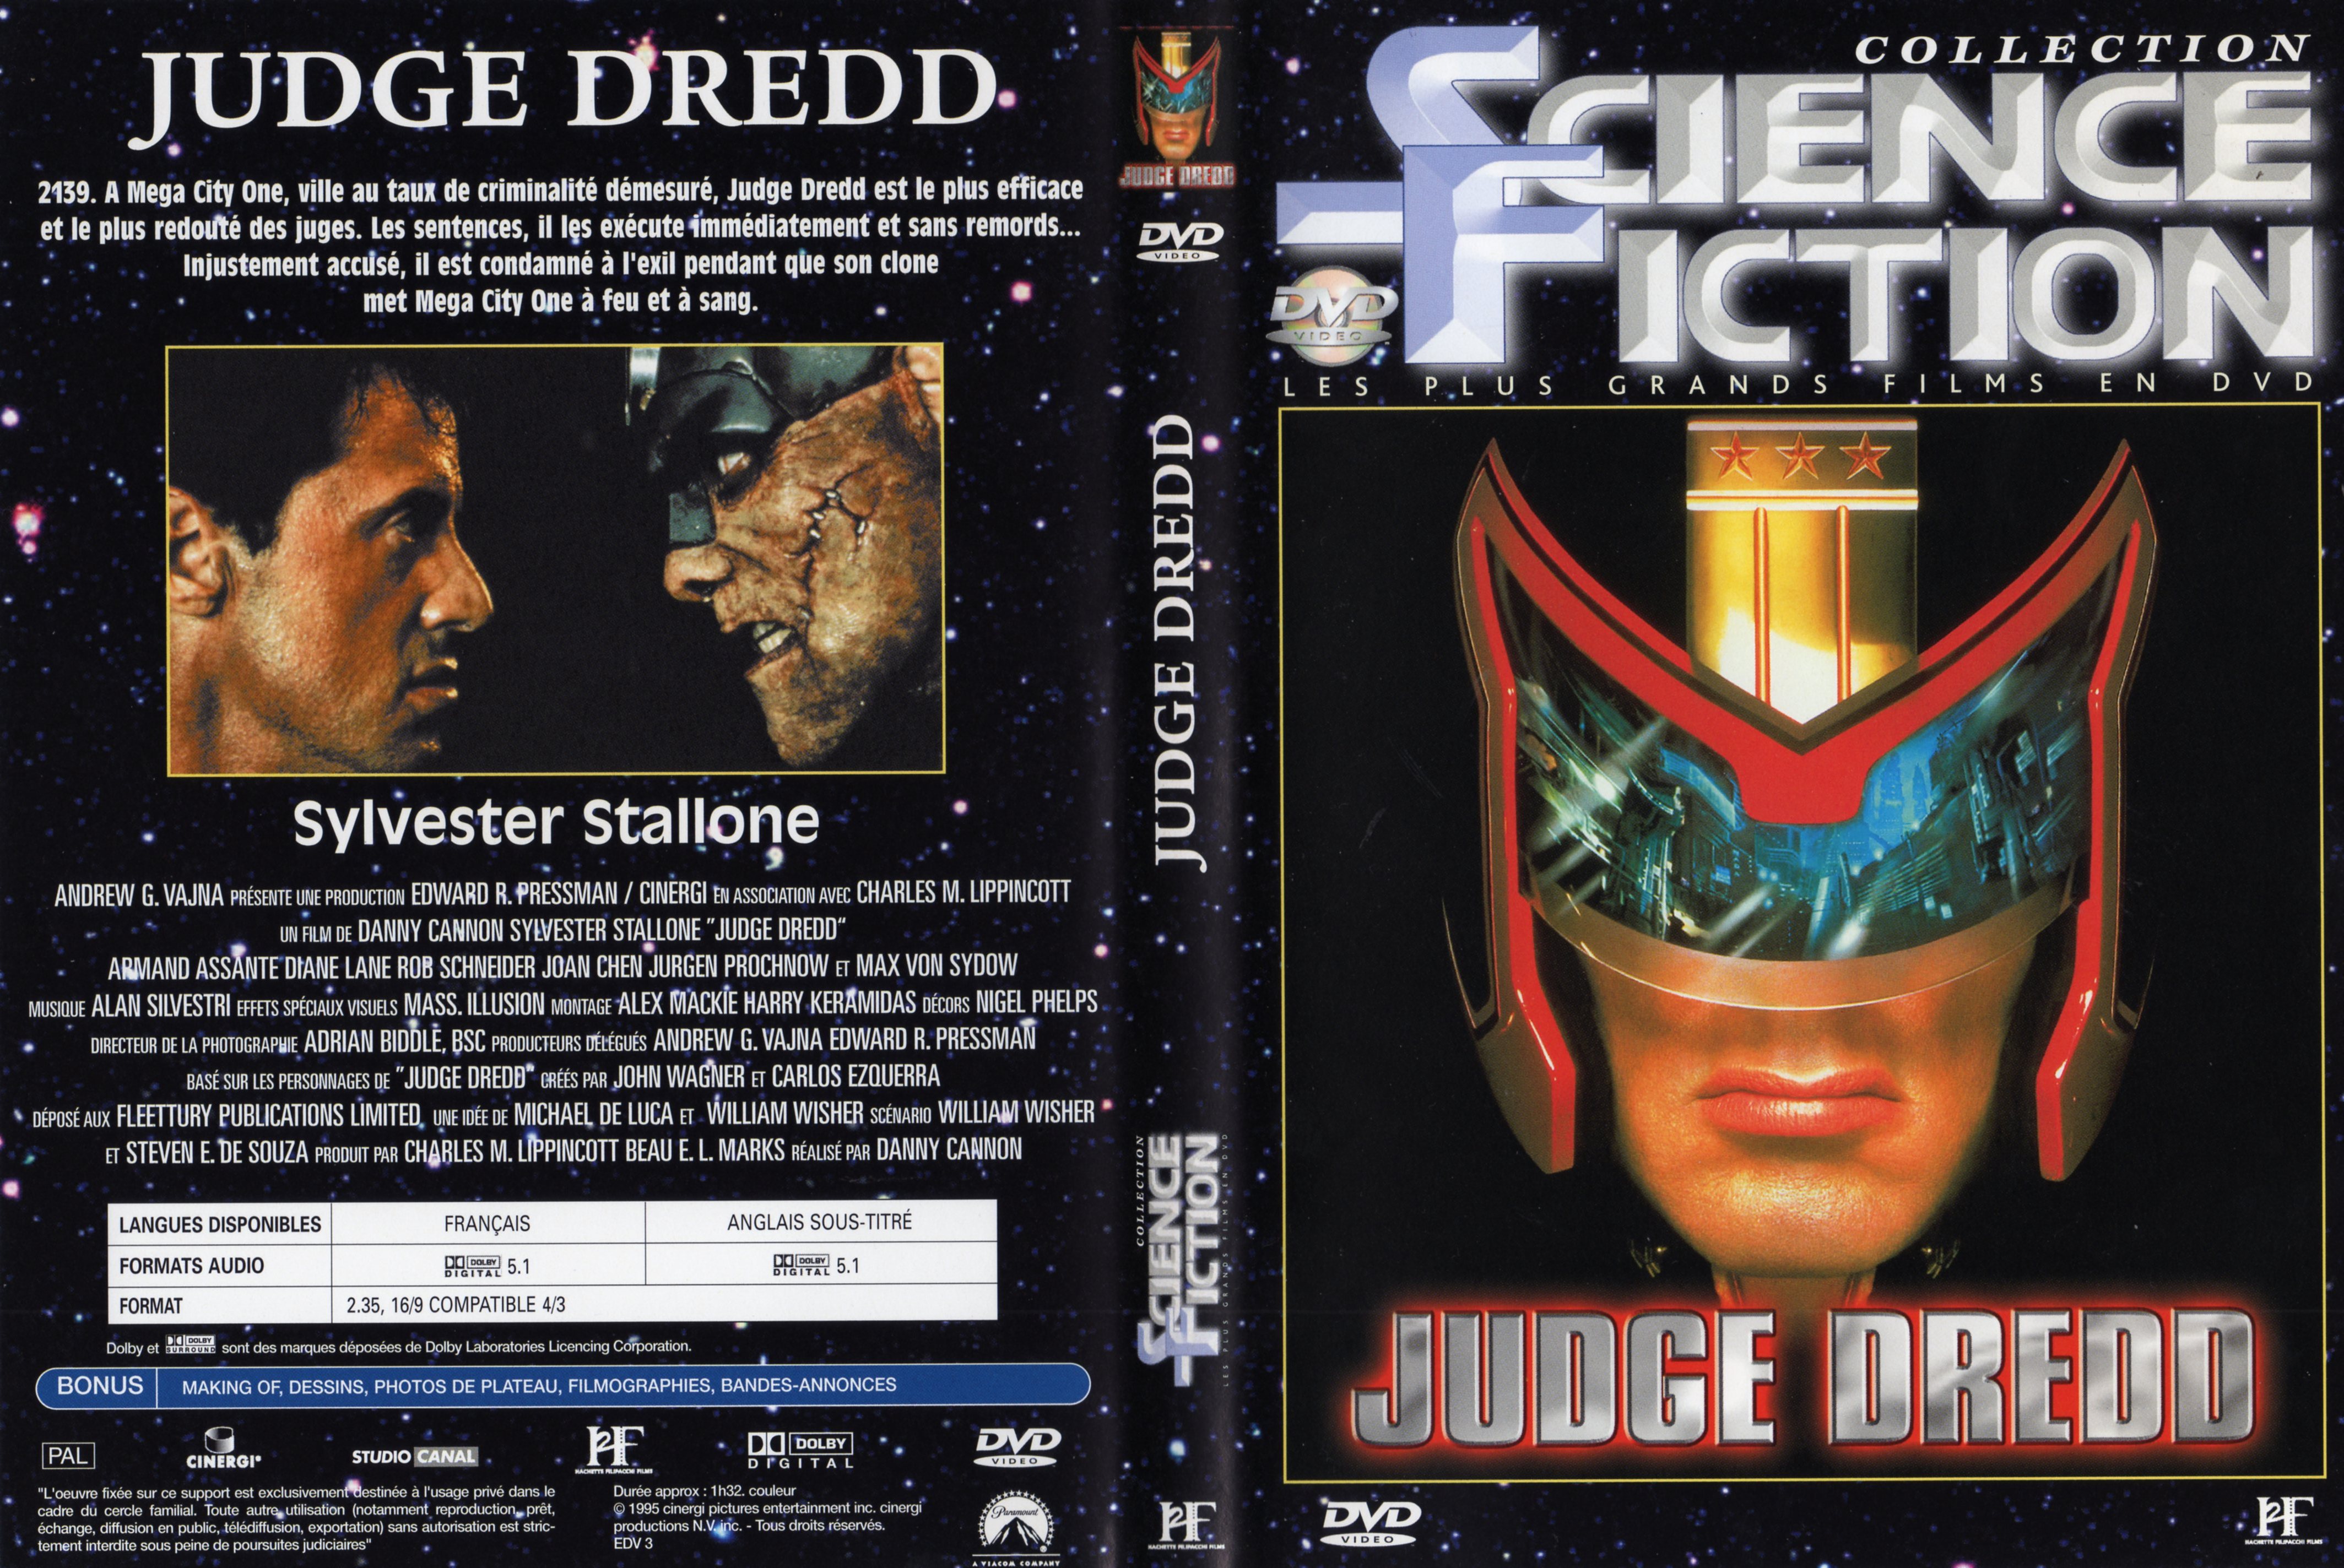 Jaquette DVD Judge Dredd v2